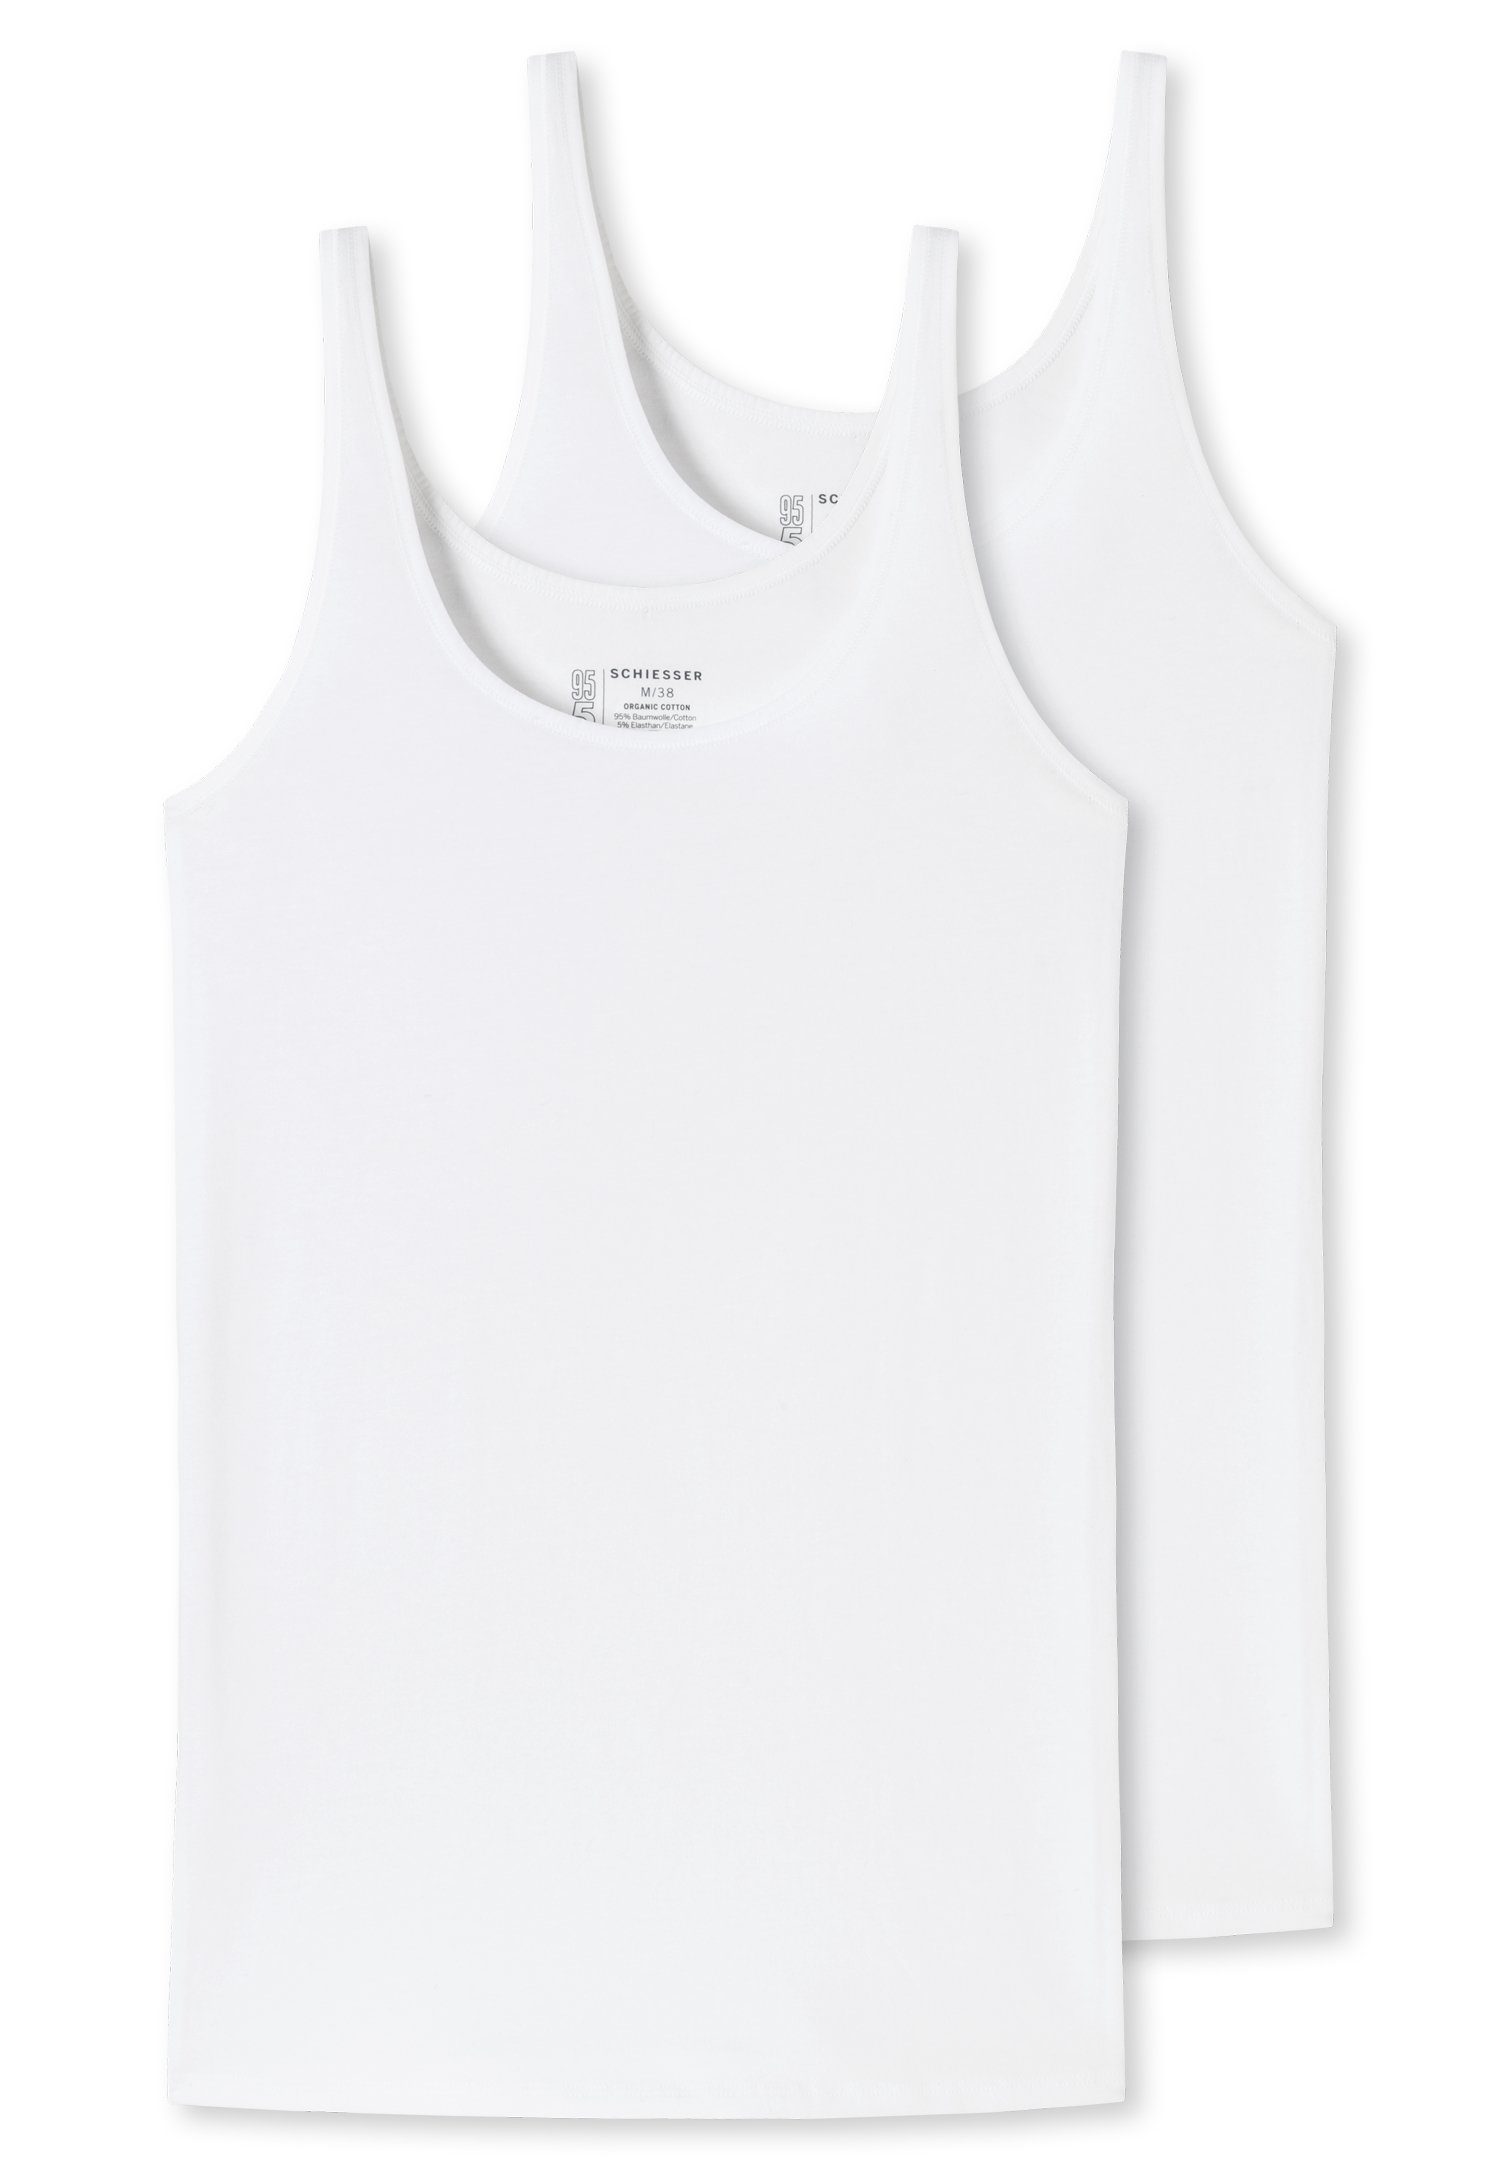 Schiesser Unterhemd (2er-Pack) mit elastischer Single-Jersey-Qualität 2xweiß | 